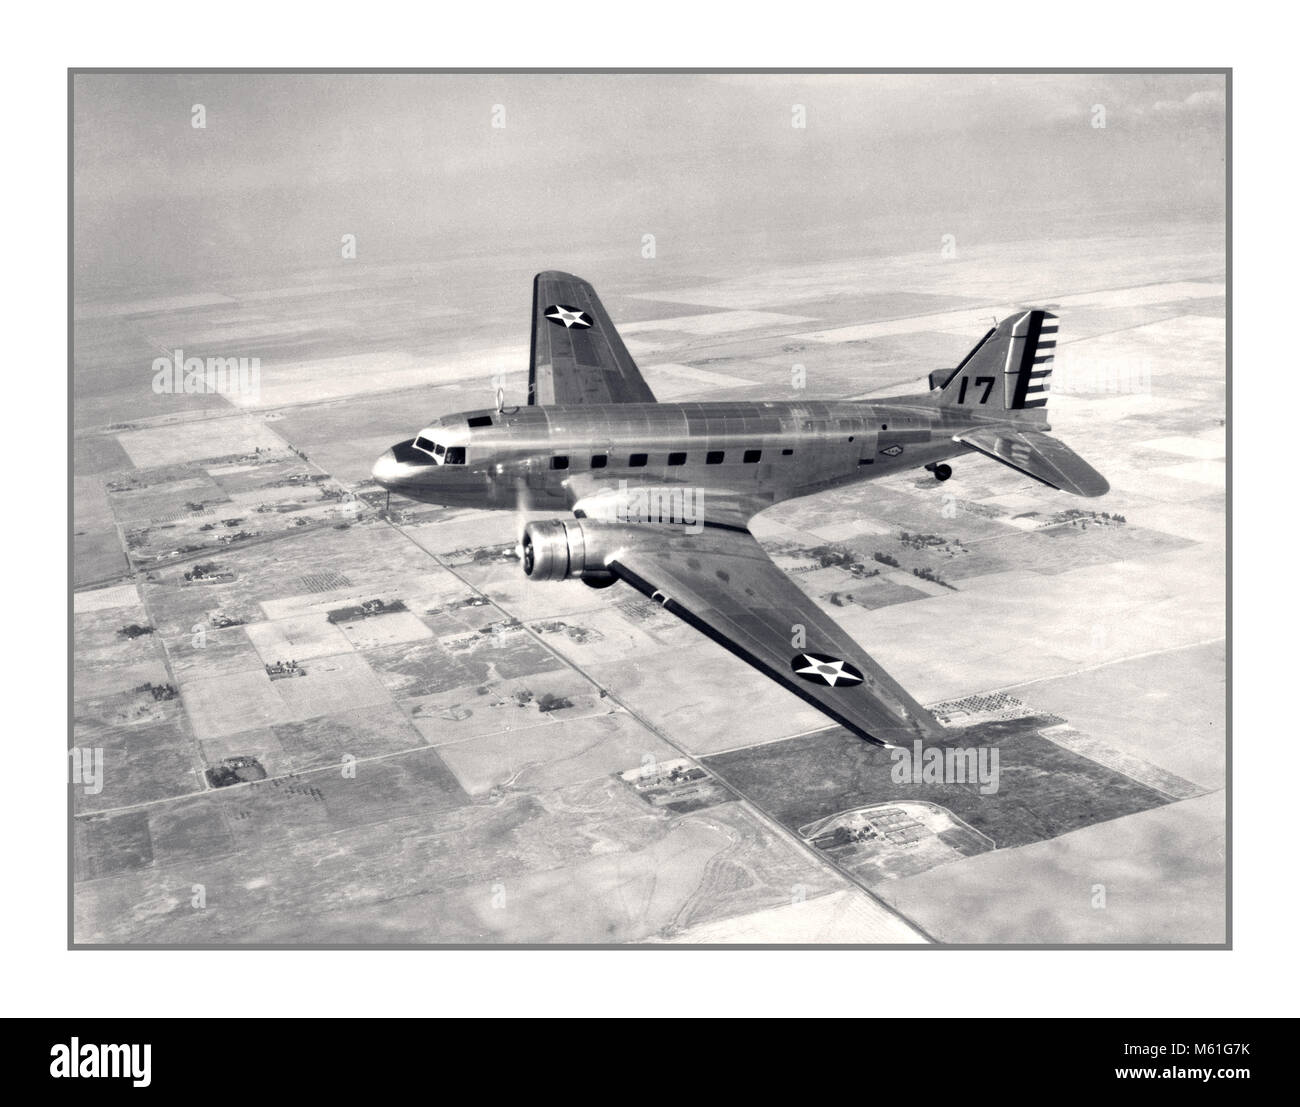 1940's Vintage WW2 immagine di un American USAF Douglas C39 velivoli da trasporto tipo, che è stato chiamato a svolgere molte rigorose funzioni di trasporto nella guerra mondiale 2, compreso l'urgente evacuazione del personale . Foto Stock